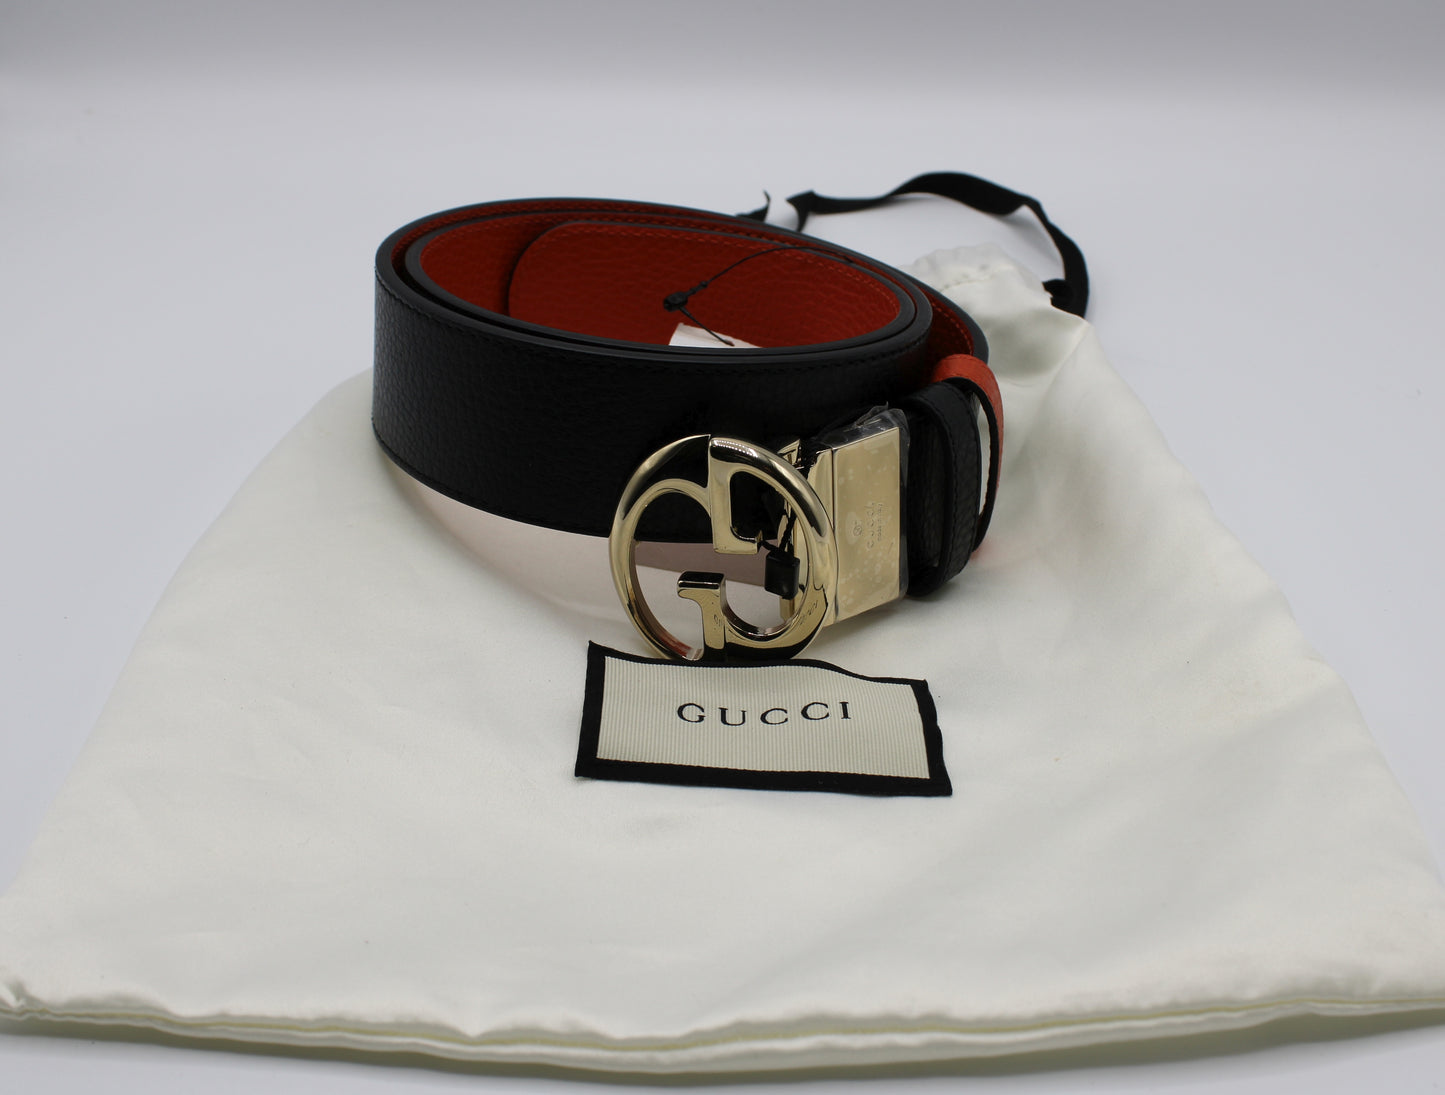 Gucci 1973 Reversible Belt Black Orange Calfskin Leather  Dust Bag